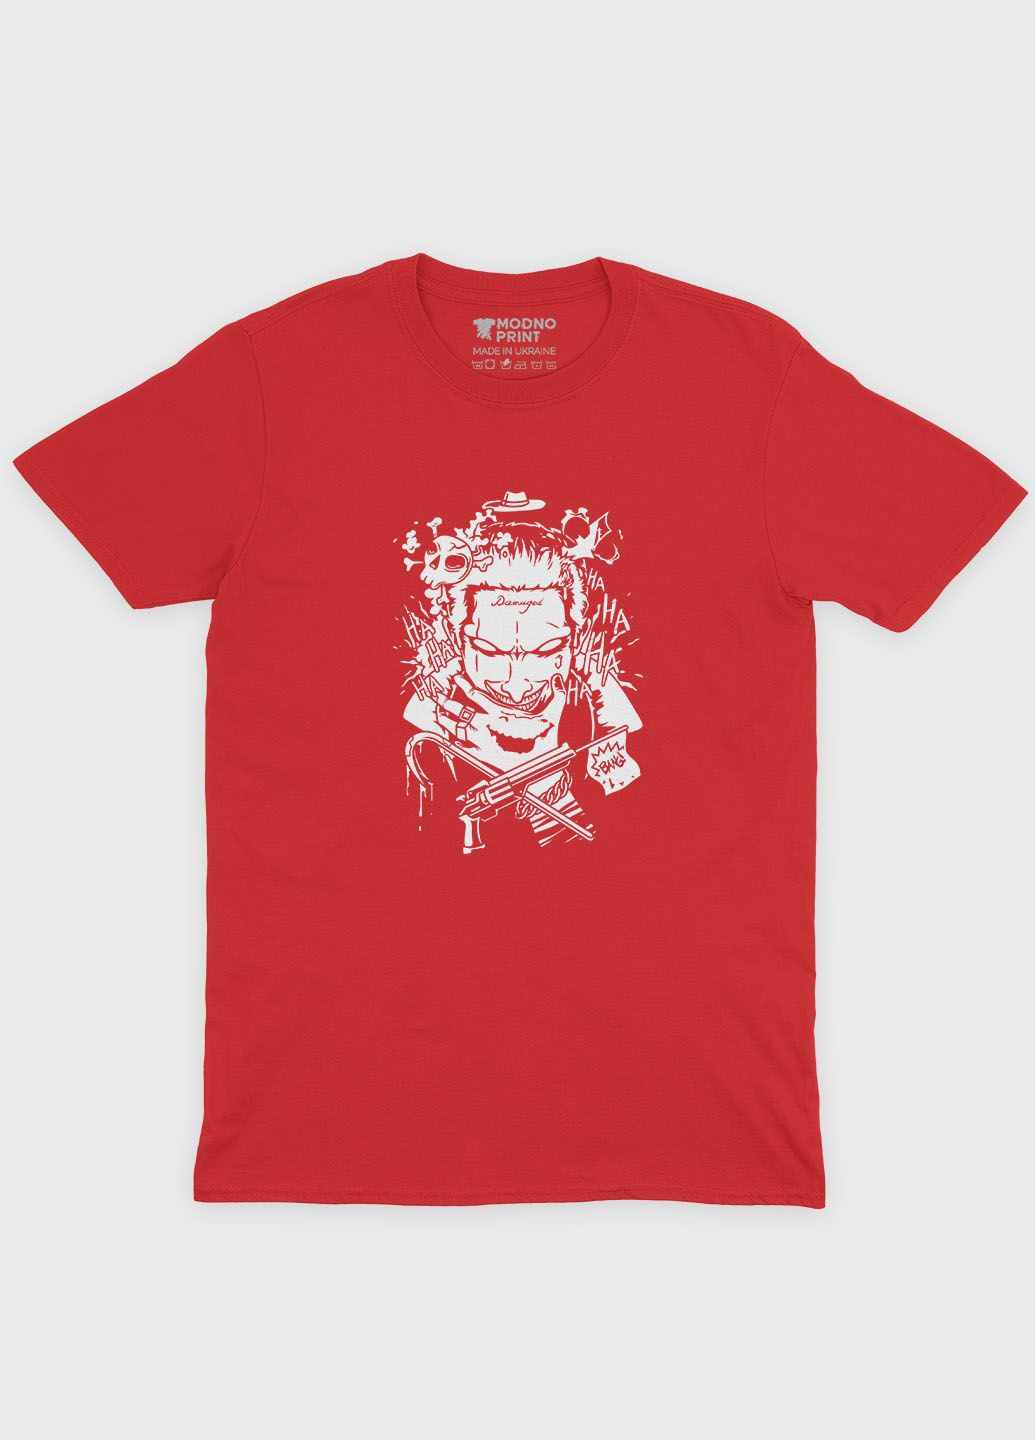 Червона демісезонна футболка для хлопчика з принтом суперзлодія - джокер (ts001-1-sre-006-005-016-b) Modno